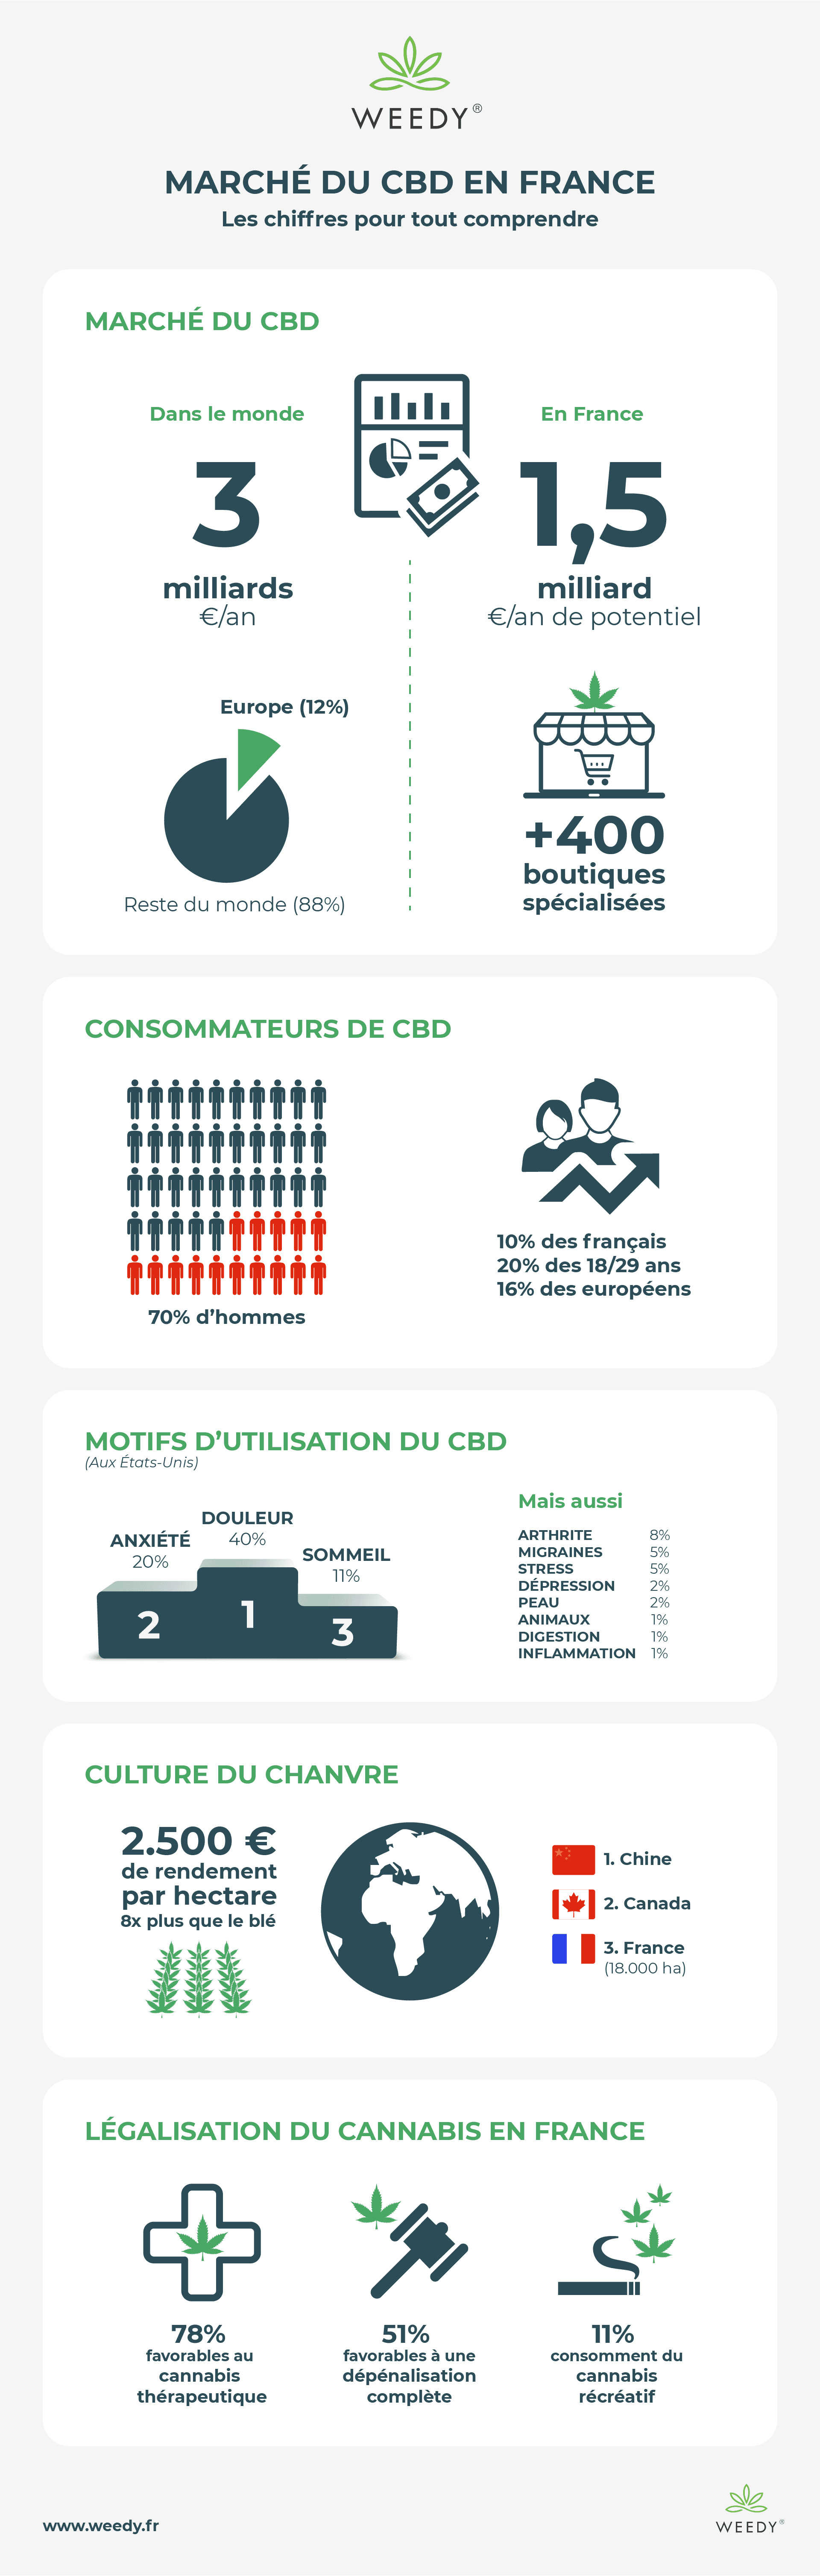 mercato del cbd in francia infografica weedy sito web